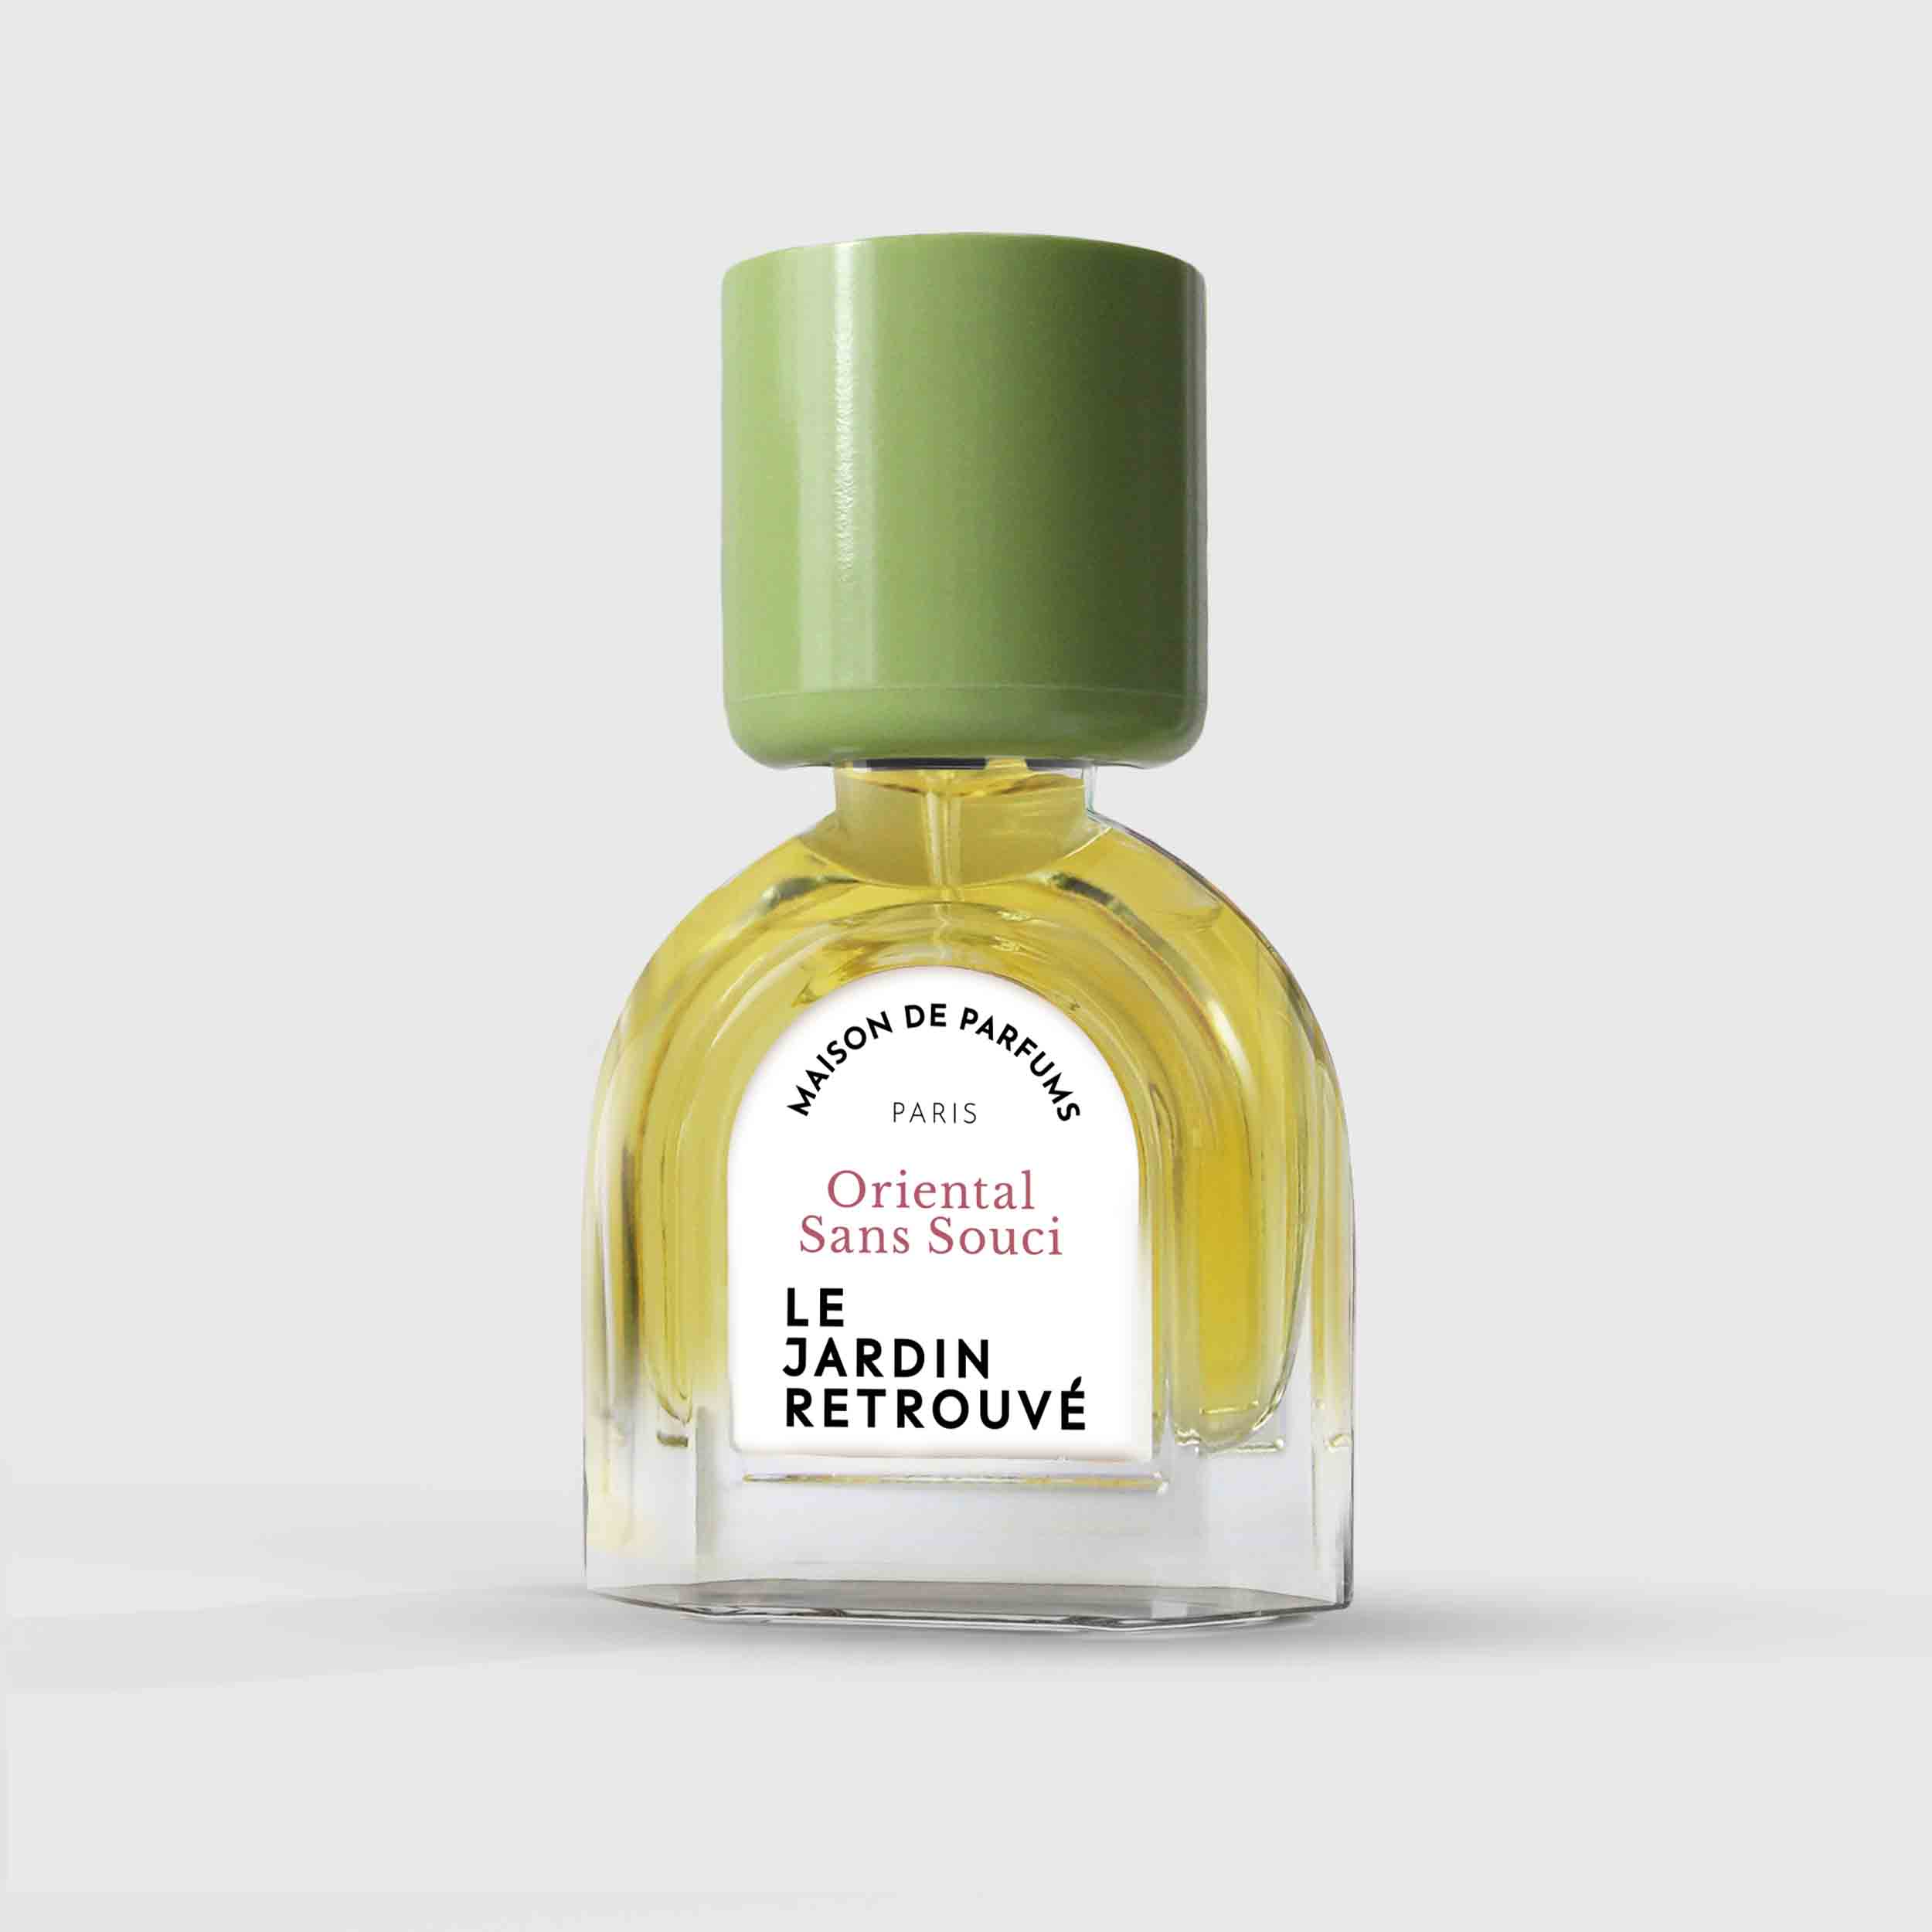 Oriental Sans Souci Eau de Parfum 15ml Bottle by Le Jardin Retrouvé